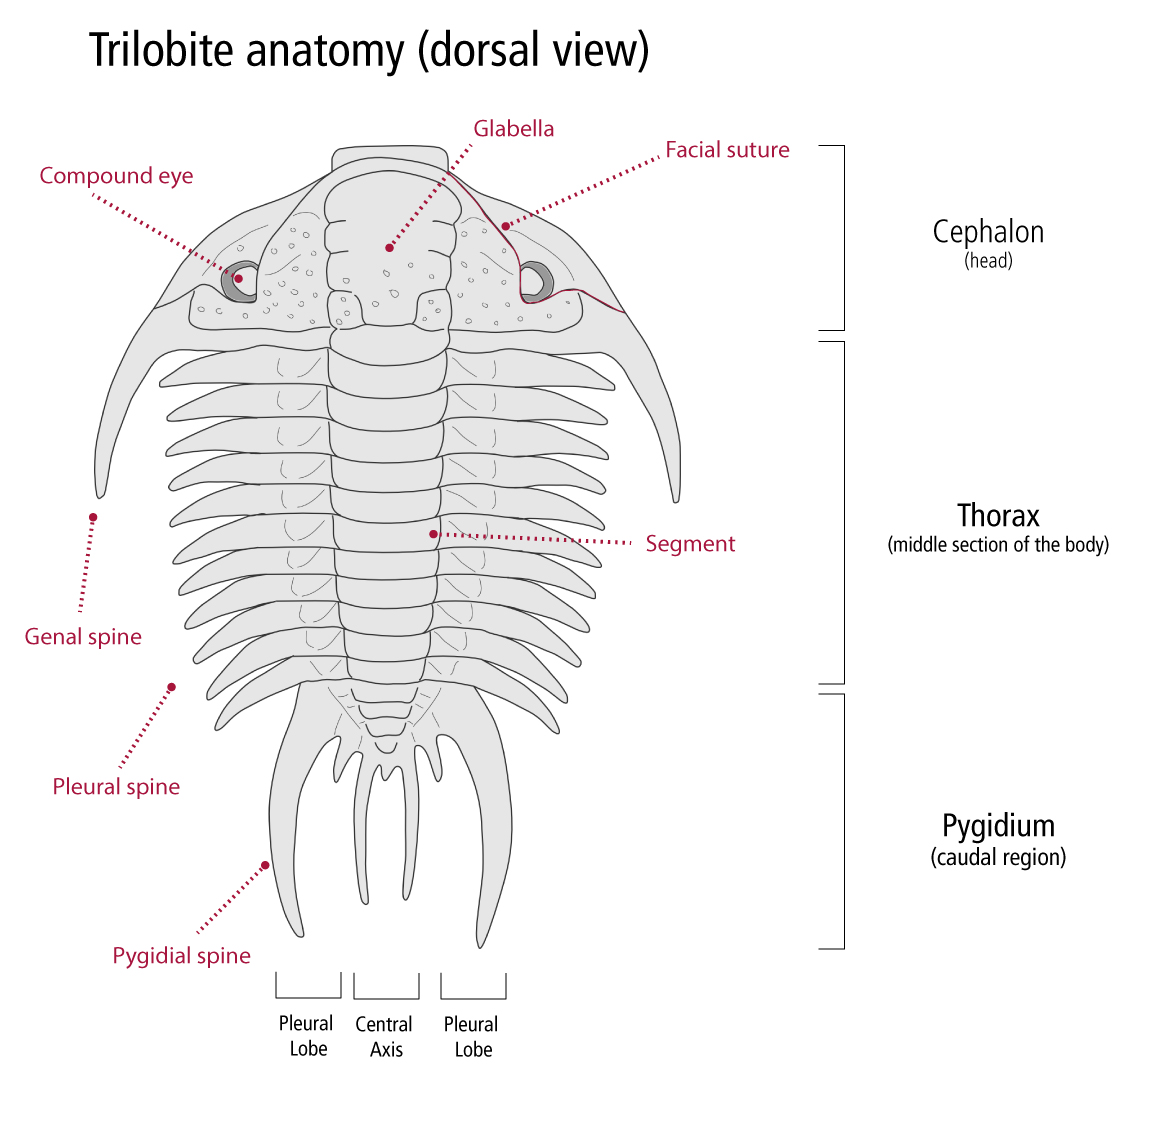 trilobite anatomy